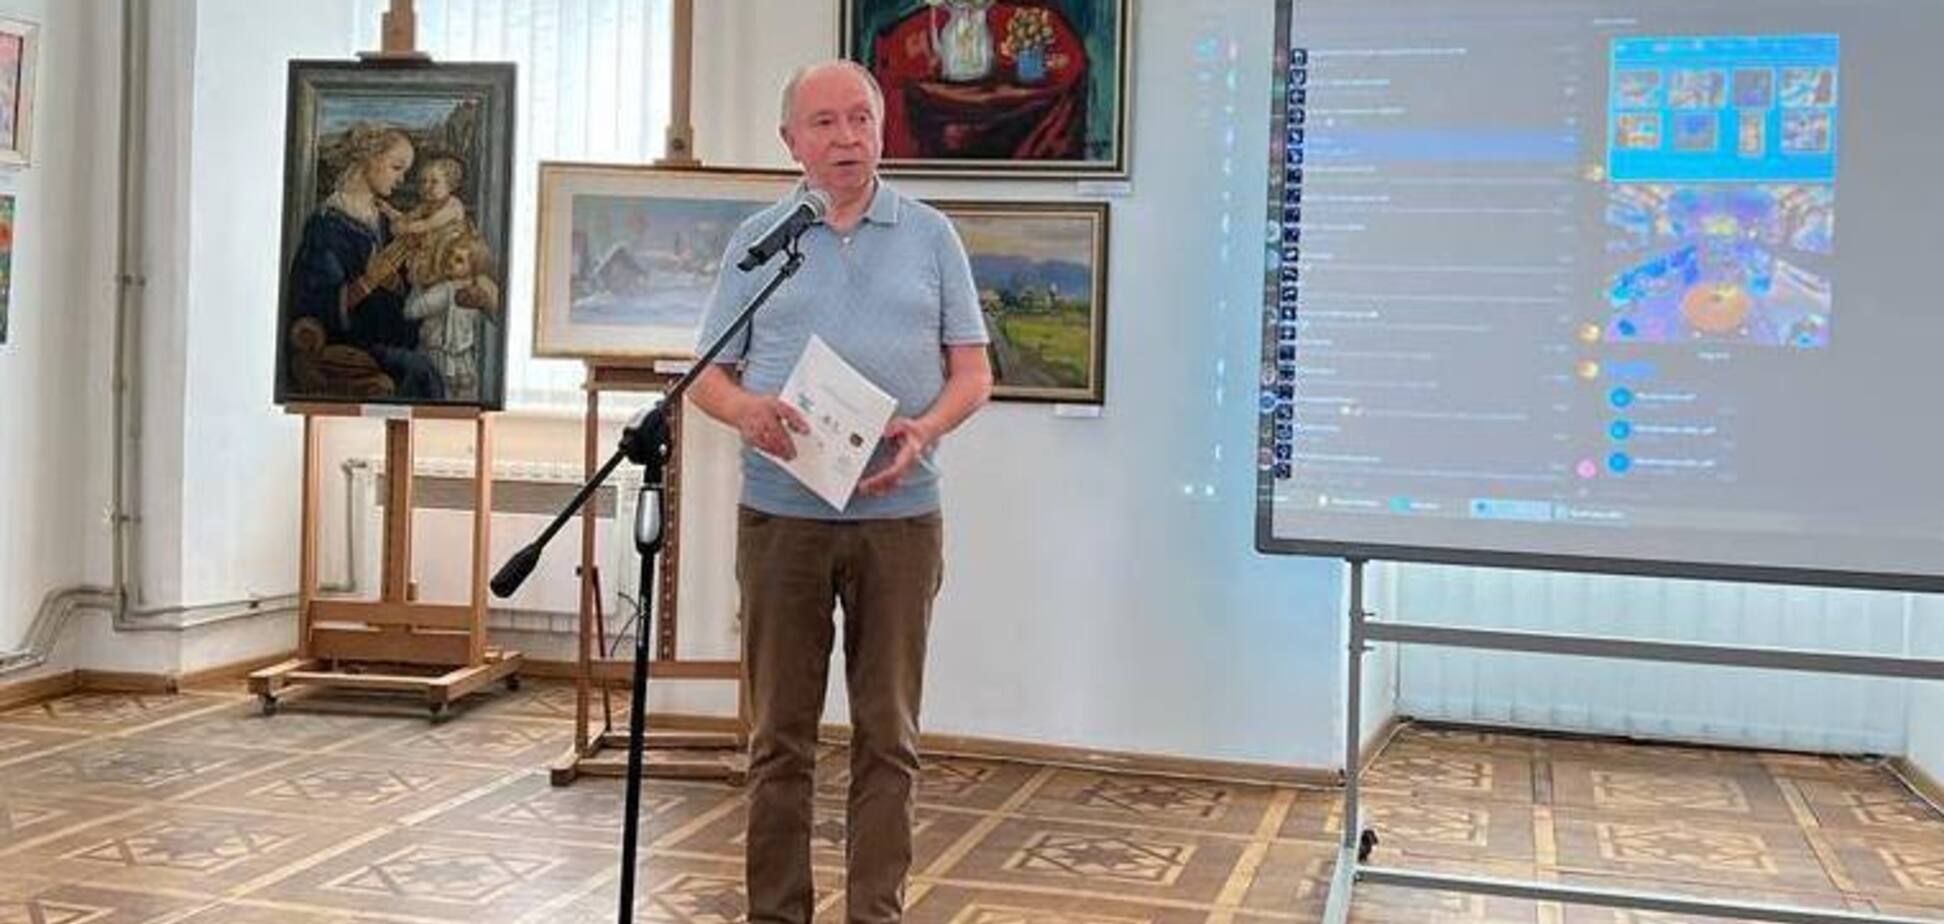 Президент МАН выставил на продажу коллекцию картин по созданию Музея науки для школьников. Фото